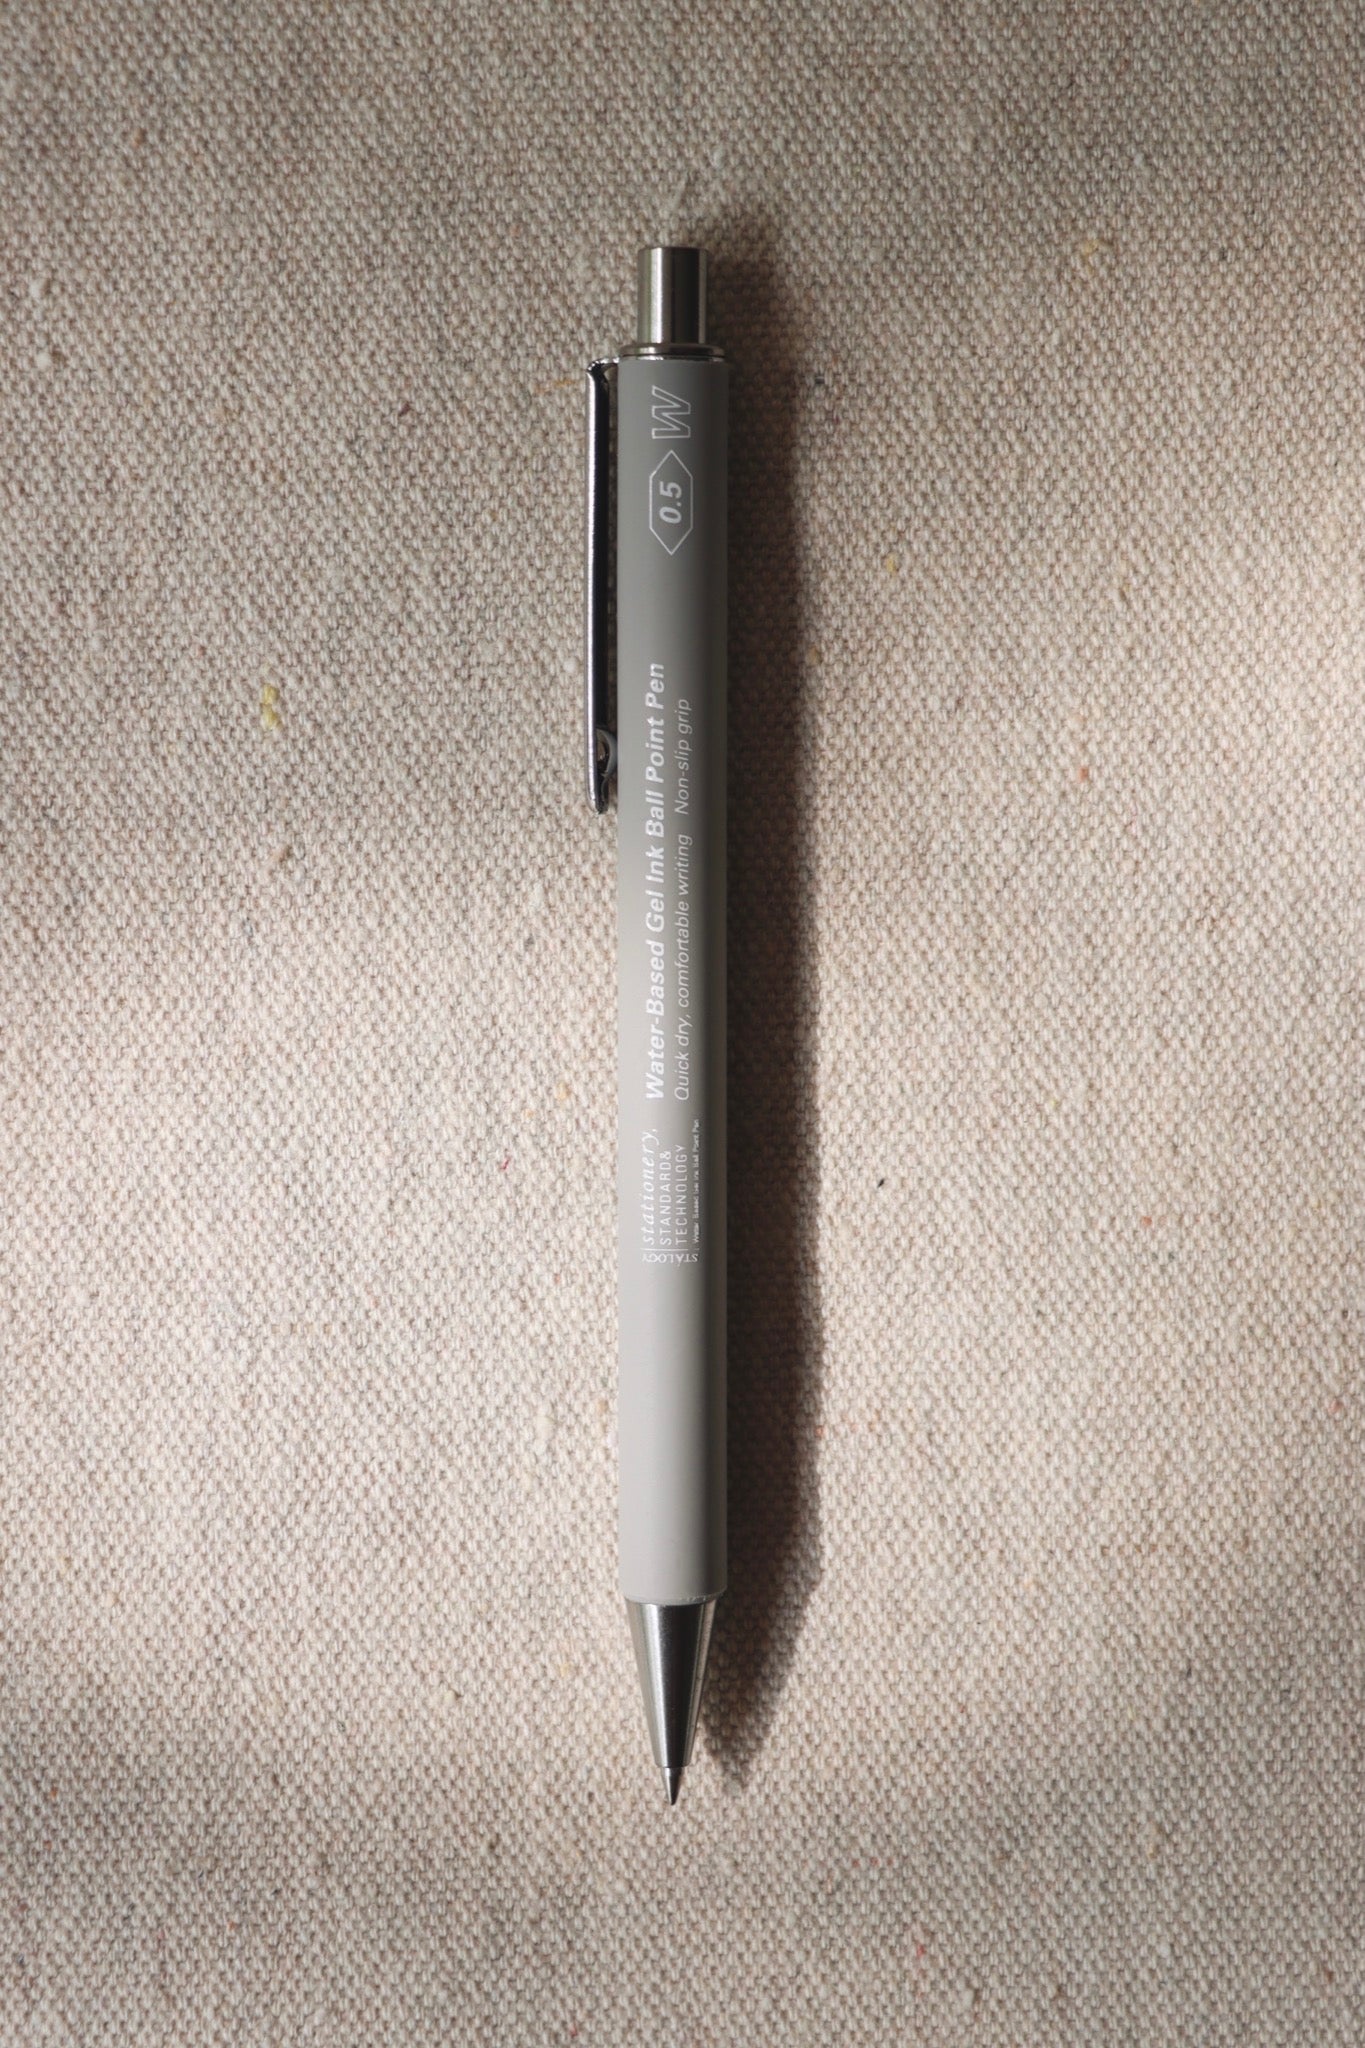 Stalogy .5mm Gel Pen